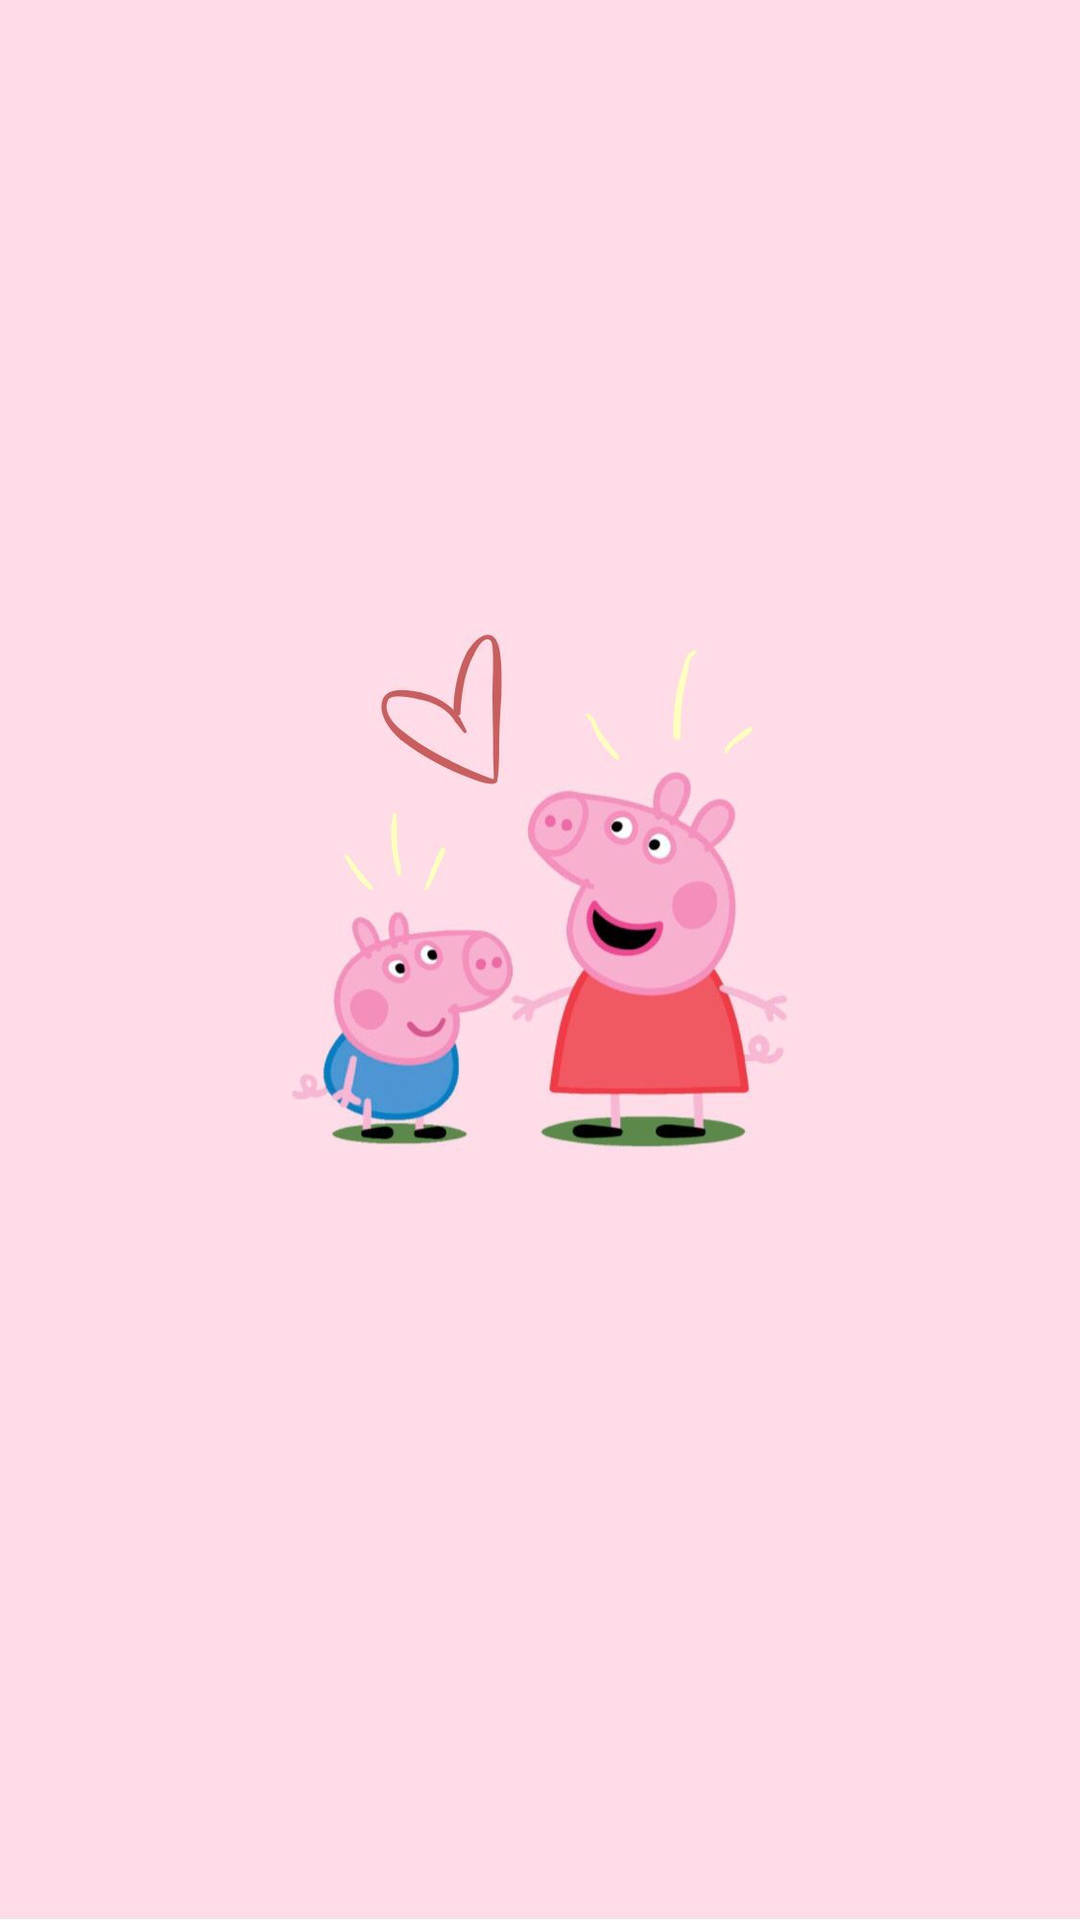 Minimalist George And Peppa Pig